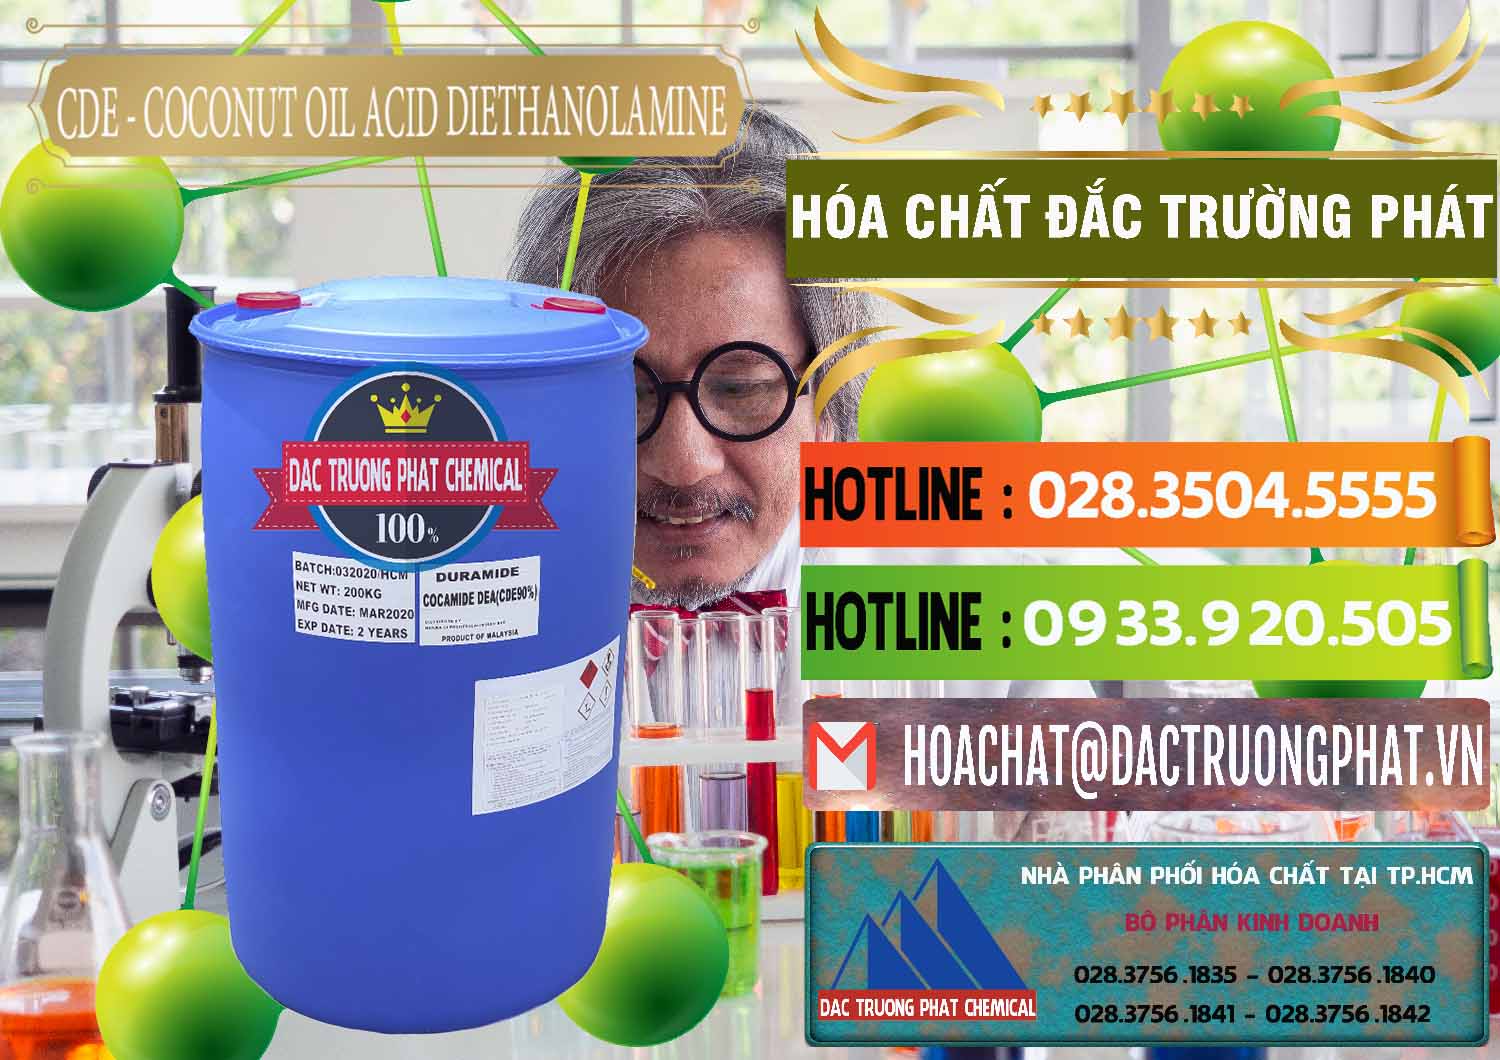 Công ty phân phối và bán CDE - Coconut Oil Acid Diethanolamine Mã Lai Malaysia - 0311 - Cty chuyên cung cấp & kinh doanh hóa chất tại TP.HCM - cungcaphoachat.com.vn